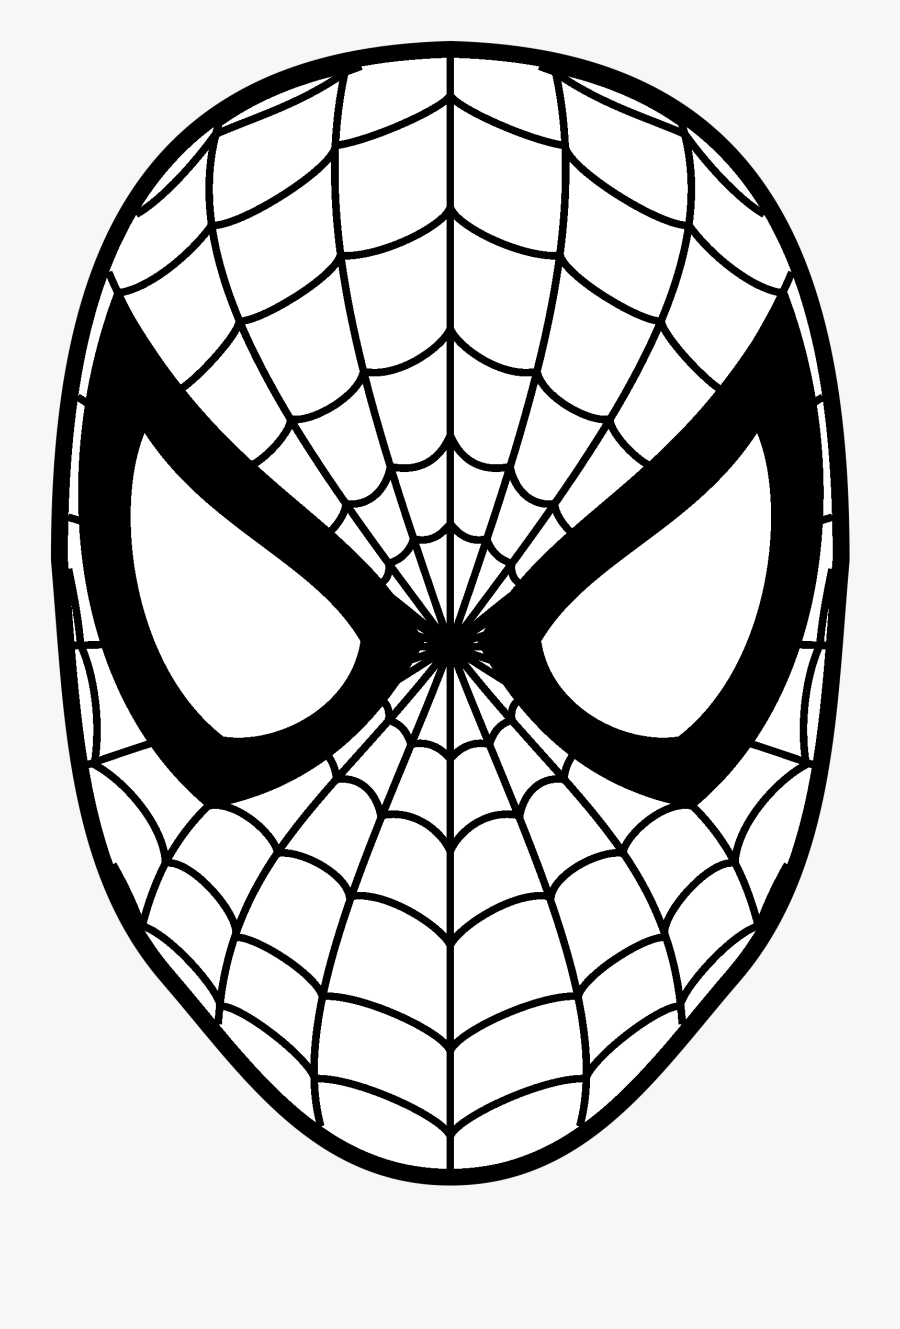 71 712282 spider man logo png transparent svg vector spiderman 2